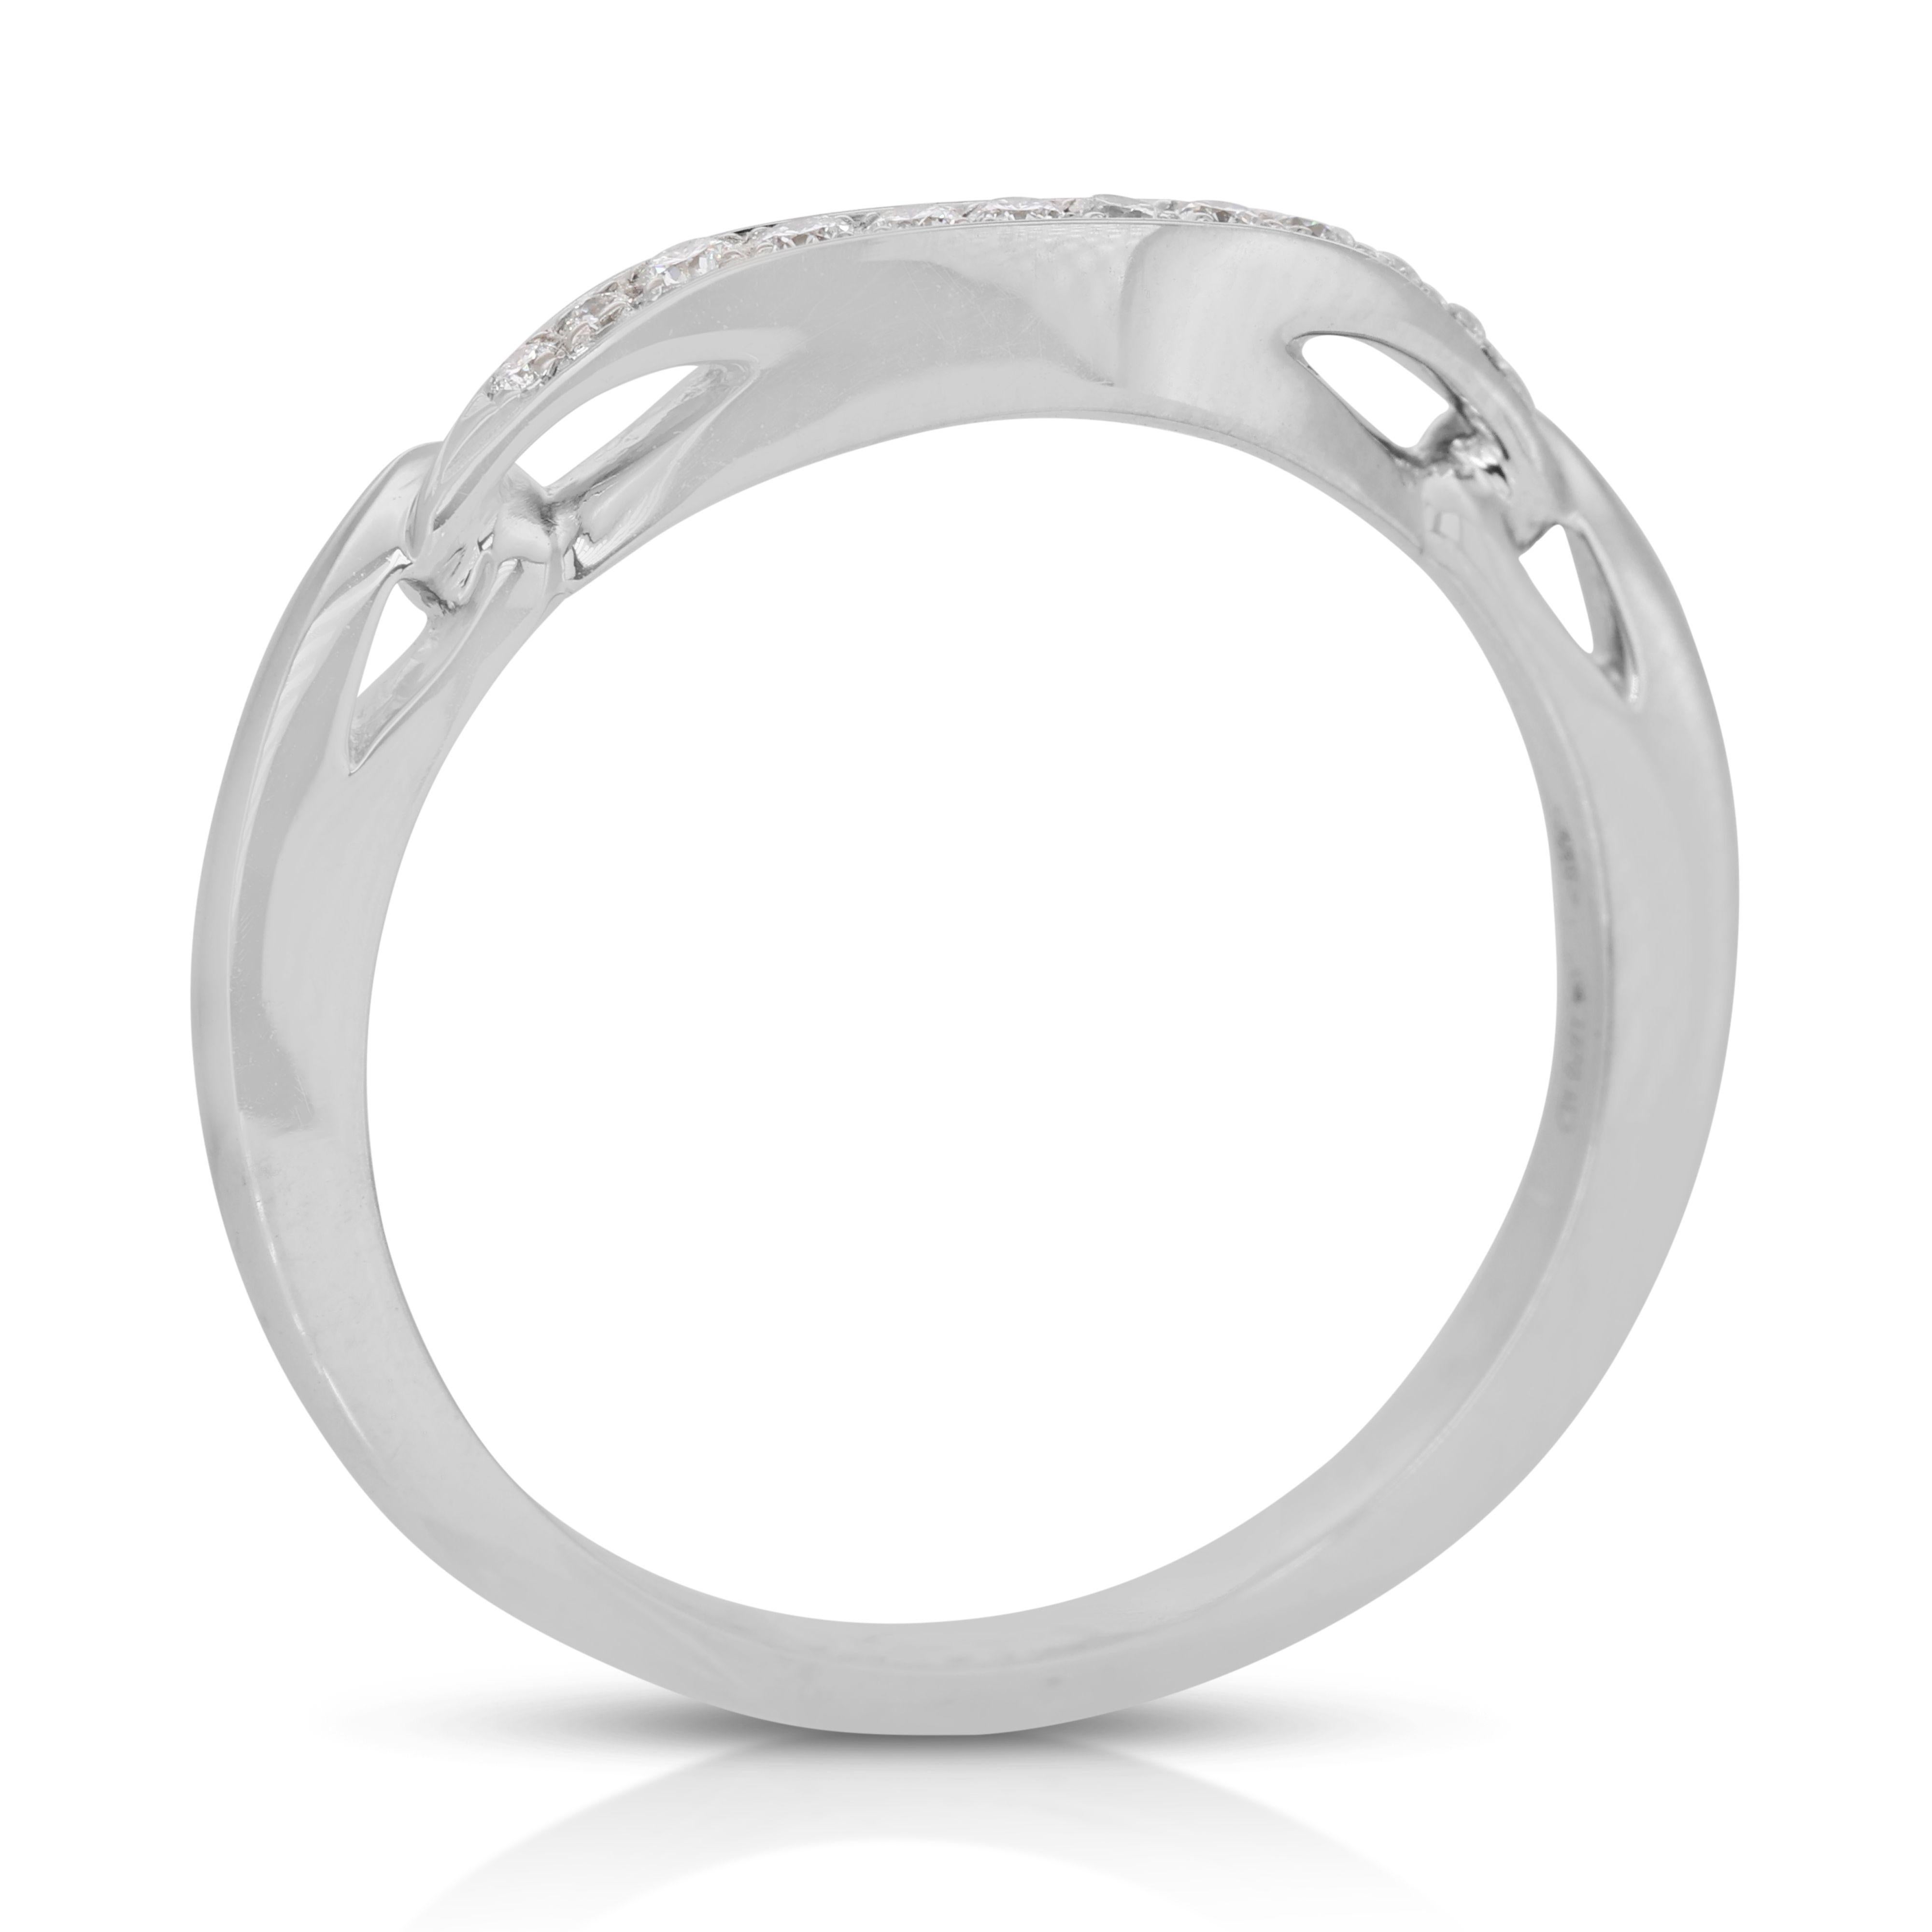 Women's Ravishing 18k White Gold Bvlgari Pave Ring with 0.40 Carat Natural Diamonds